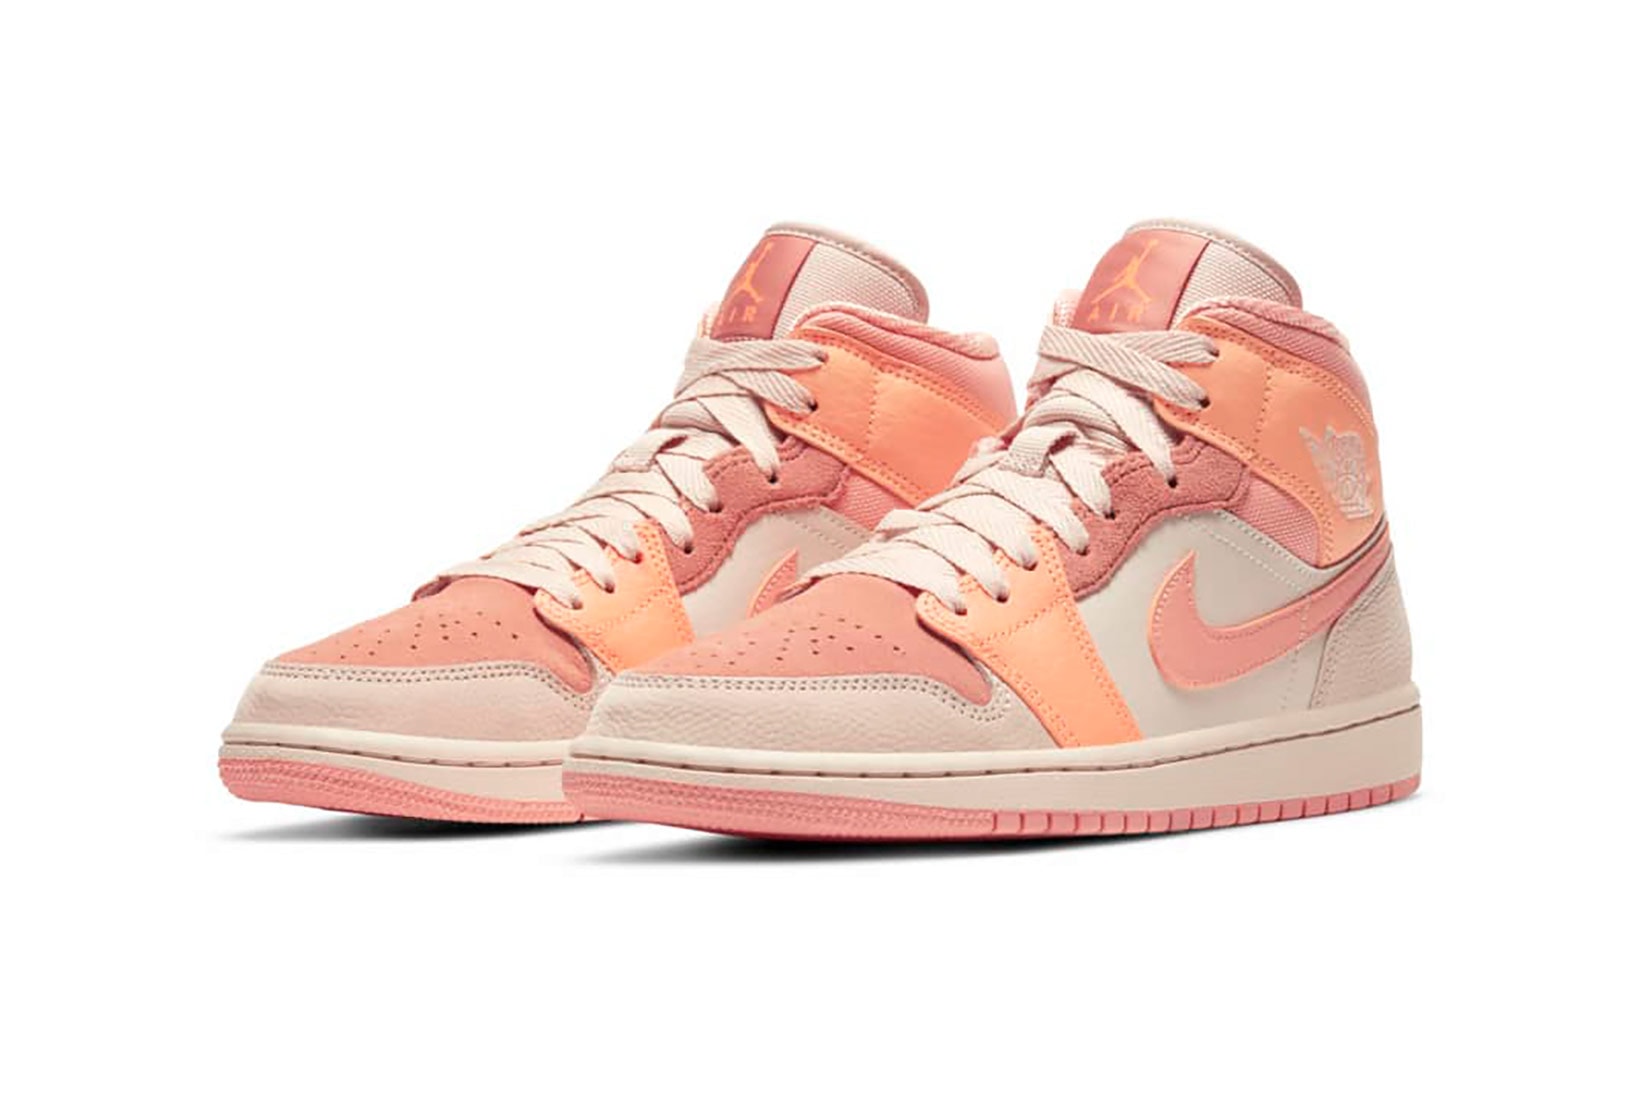 nike air jordan 1 aj1 mid womens sneakers apricot orange pink colorway shoes footwear sneakerhead kicks lateral laces